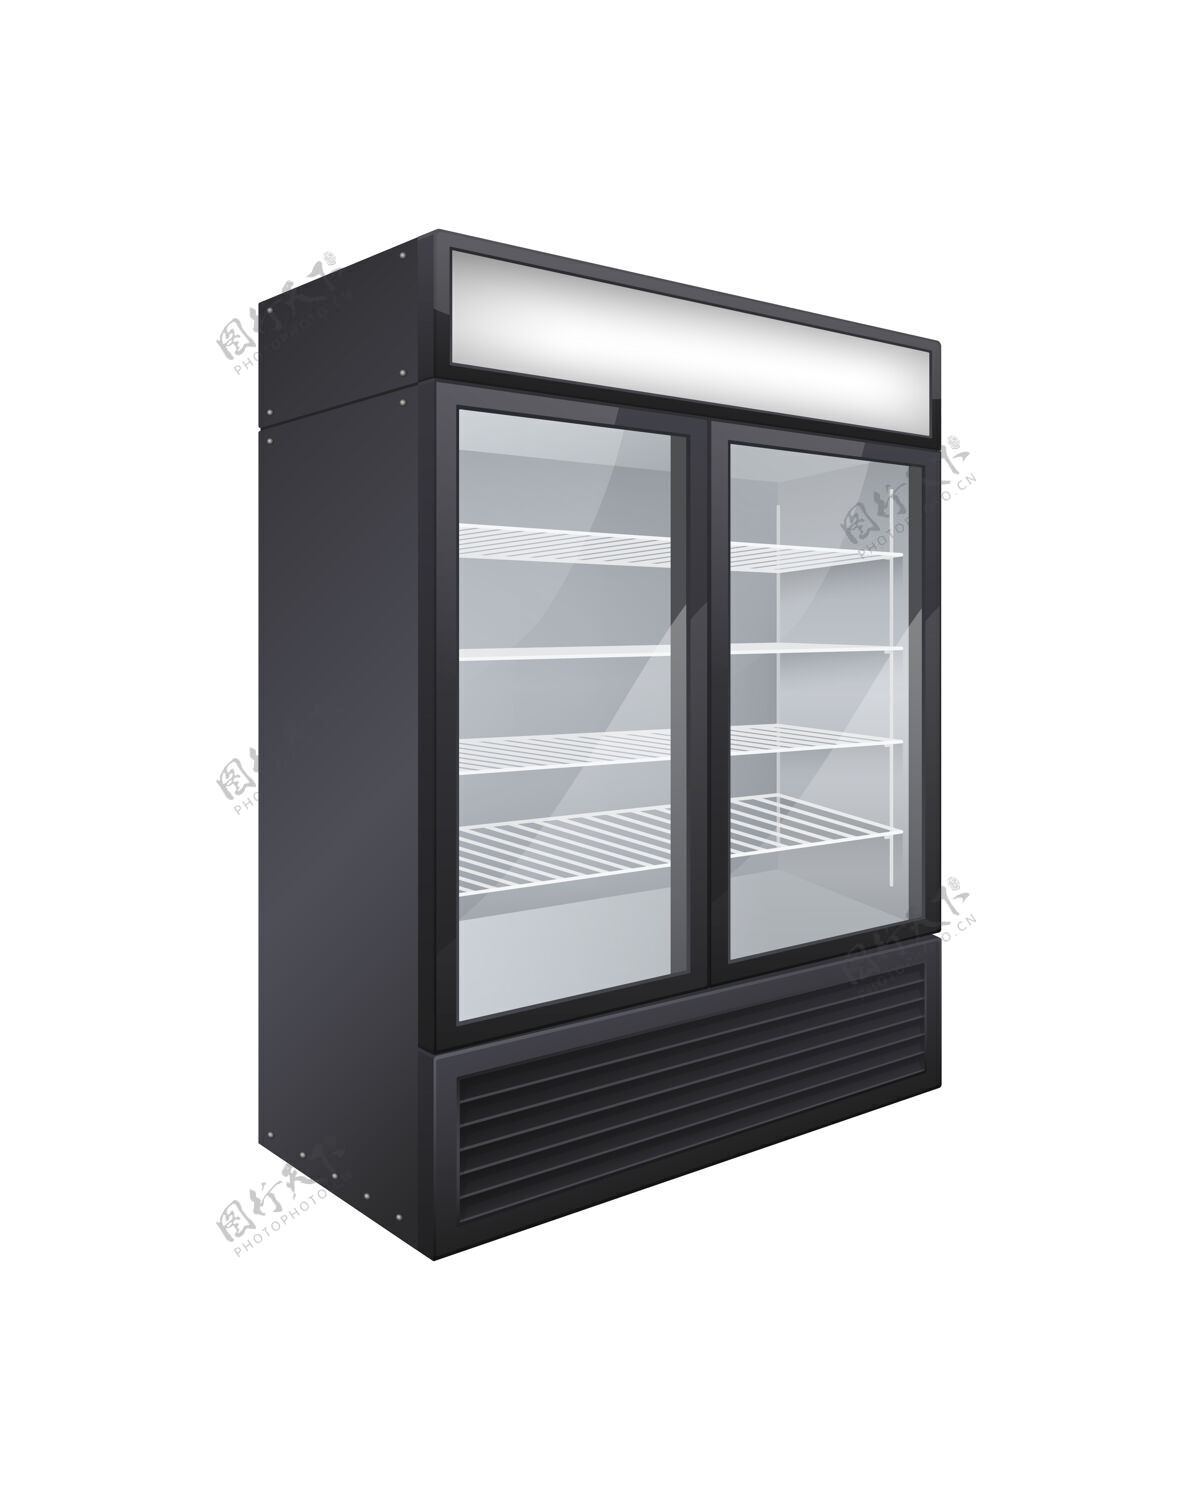 封闭商用玻璃门饮料冰箱真实构图与孤立的双门店冰箱形象冰箱冷却器满